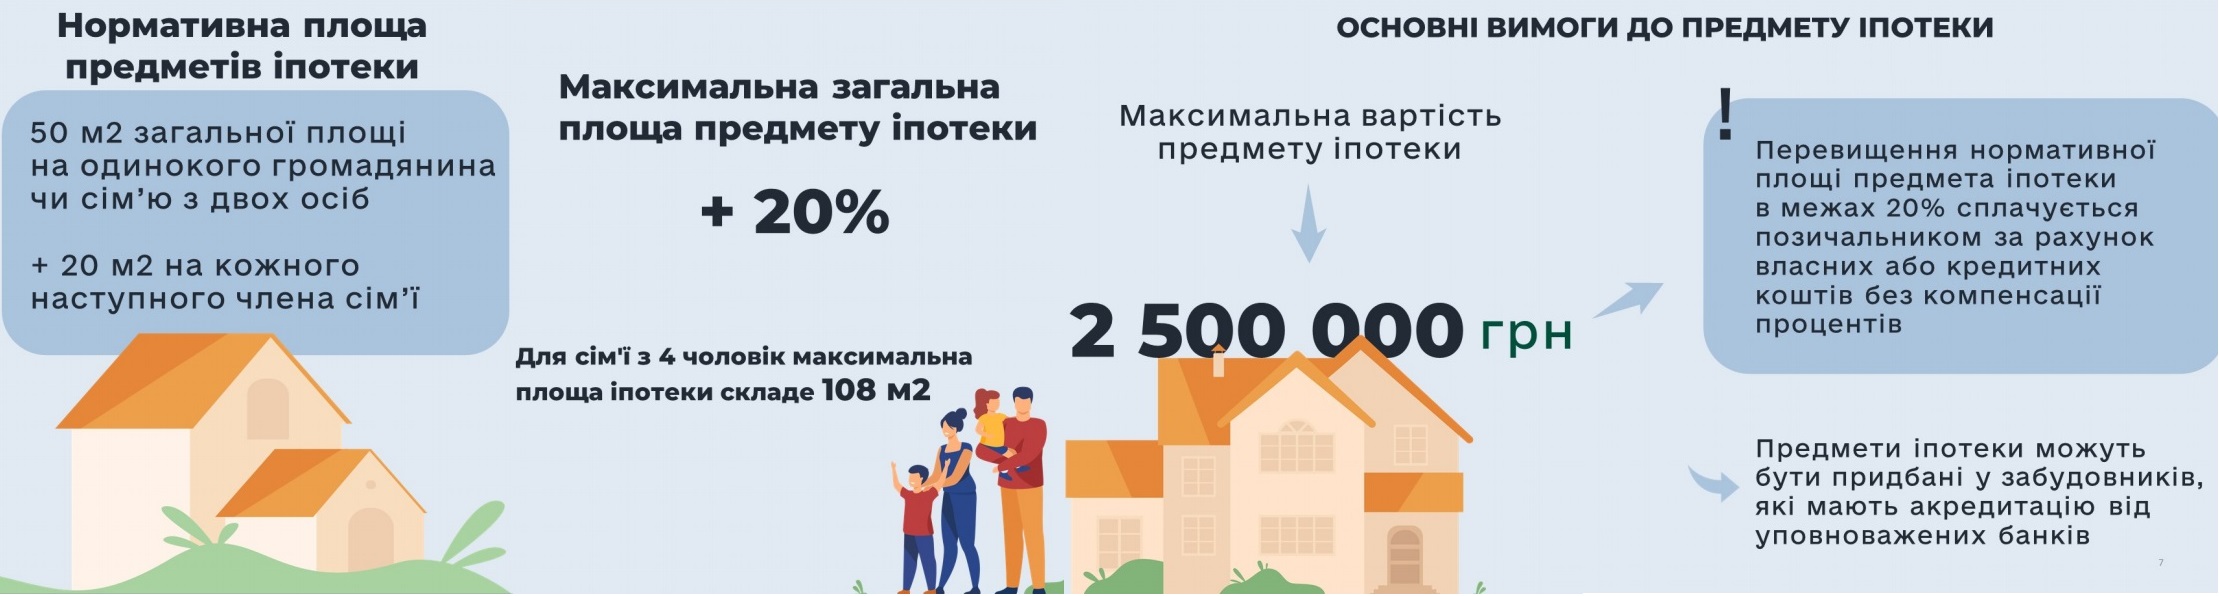 Квартира в кредит: как взять ипотеку в Украине и сколько она стоит